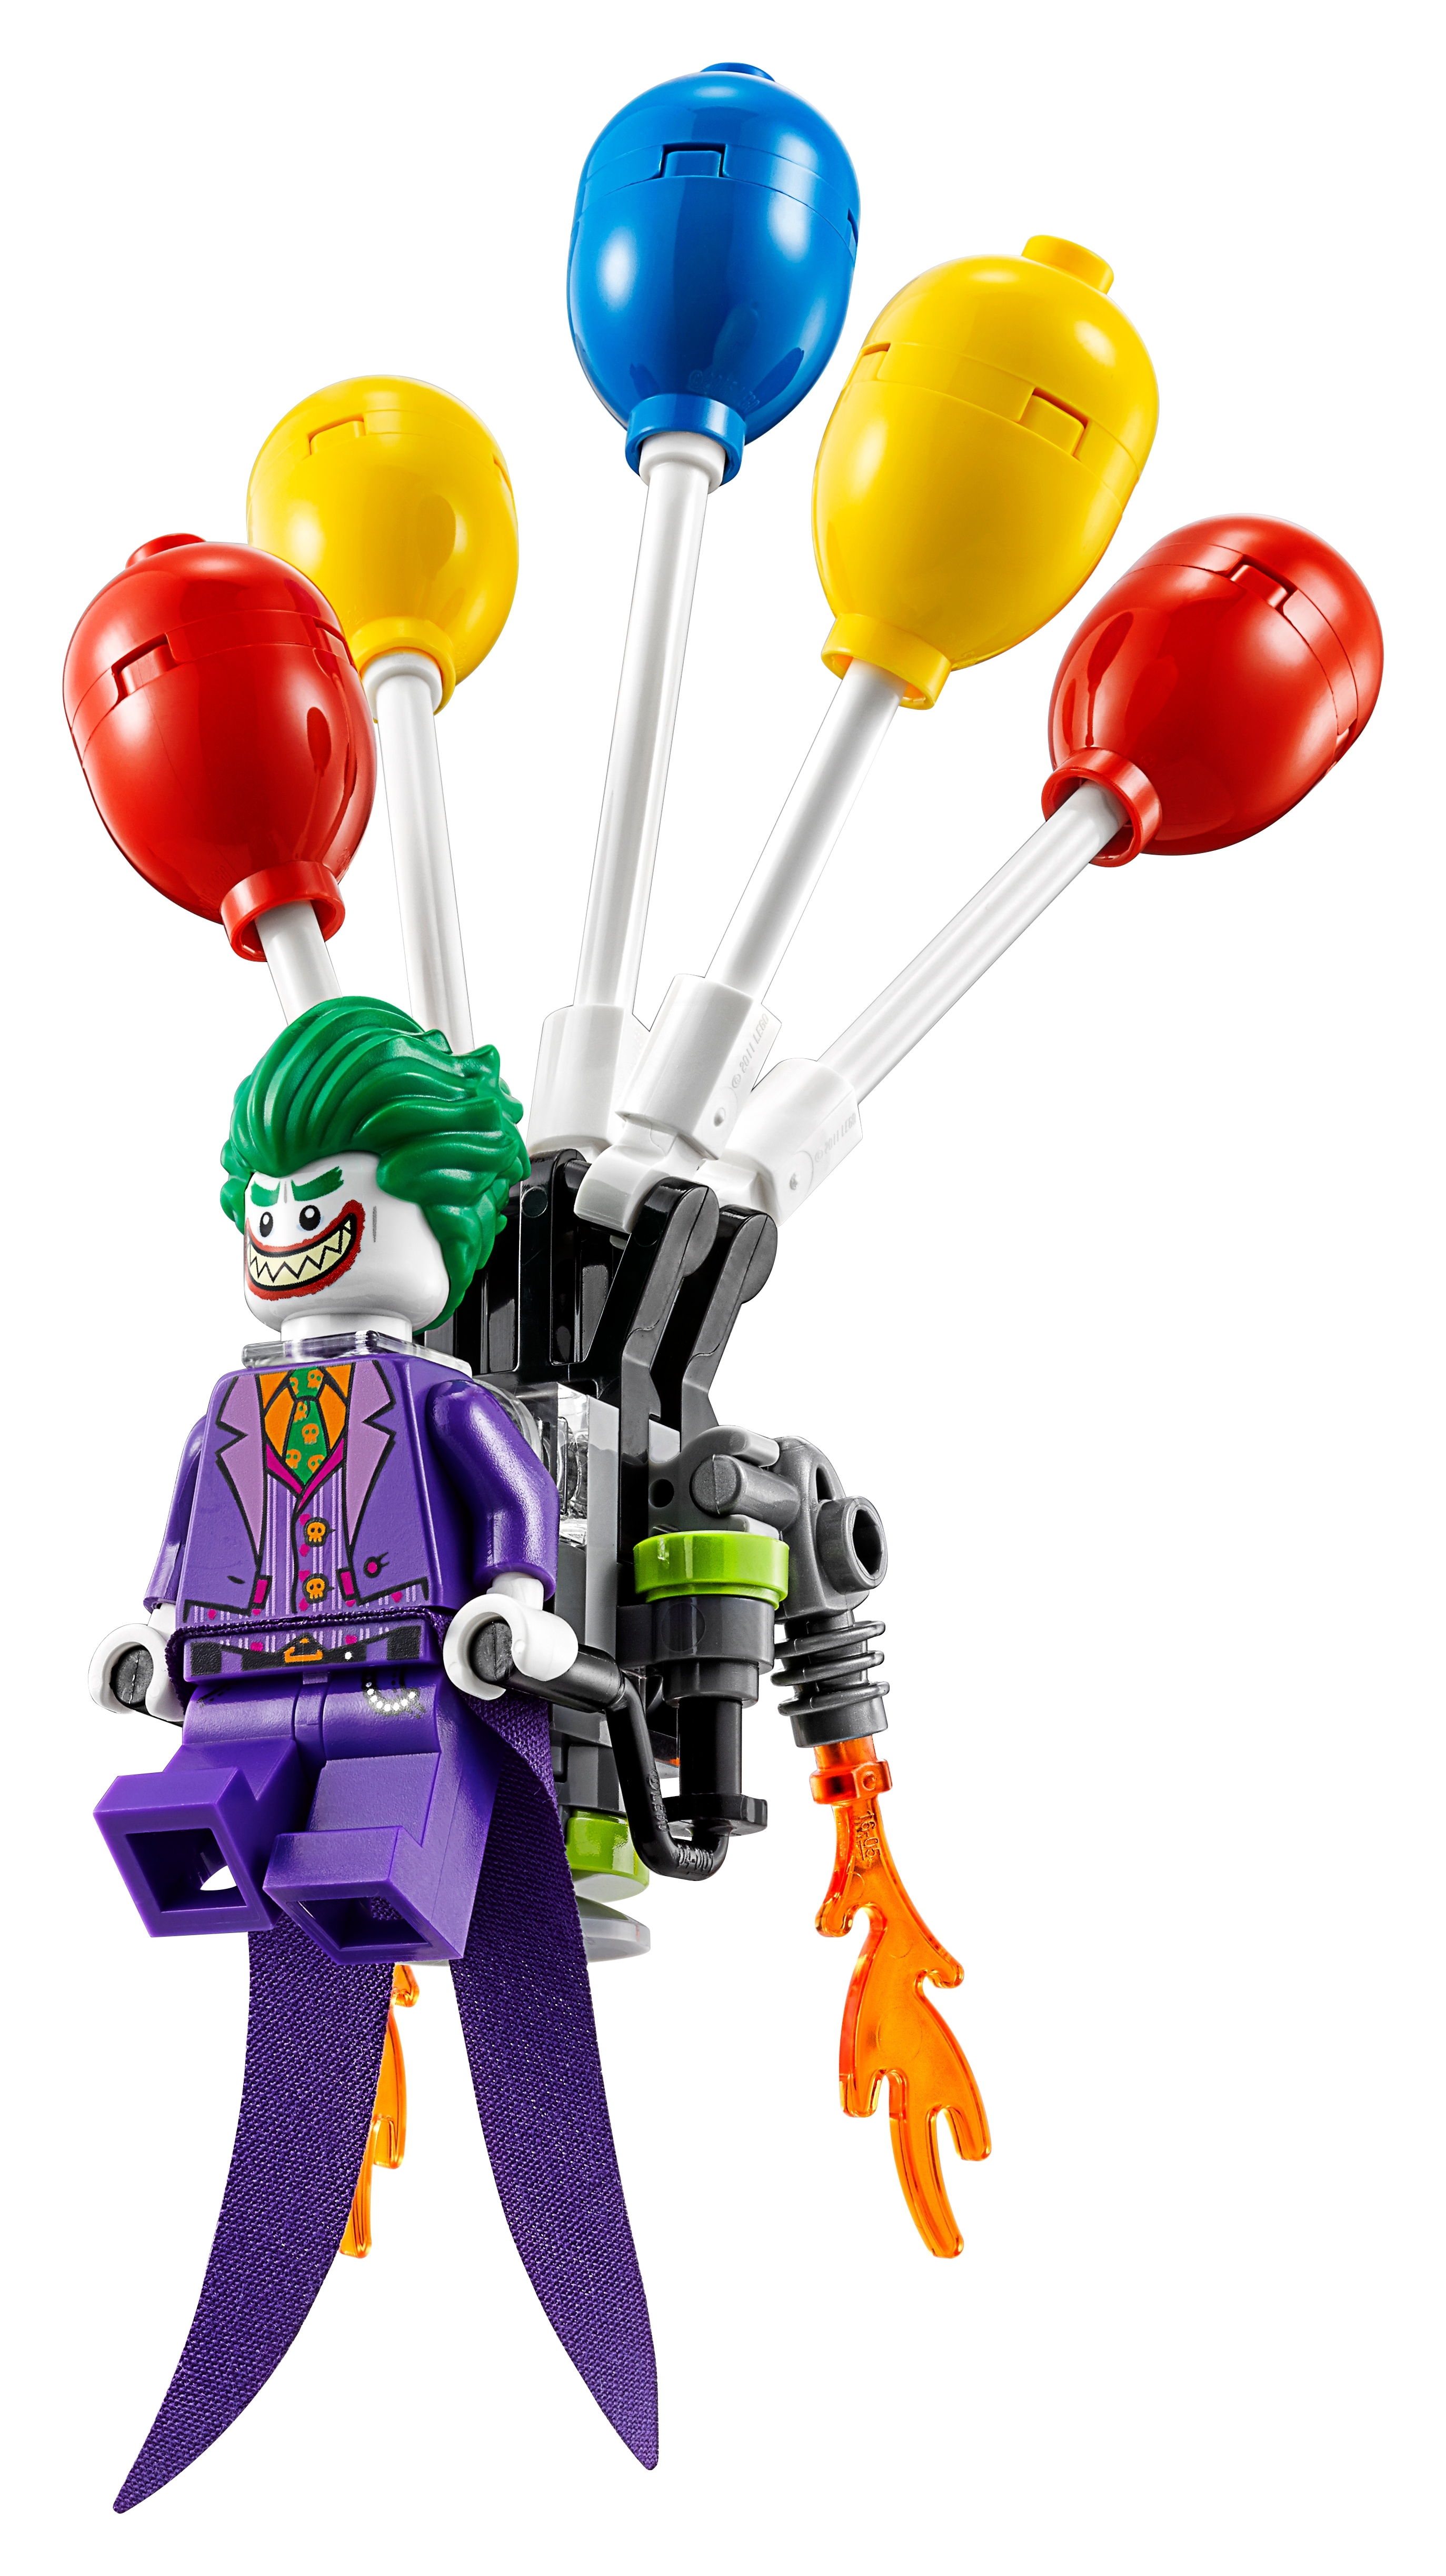 lego batman the joker balloon escape